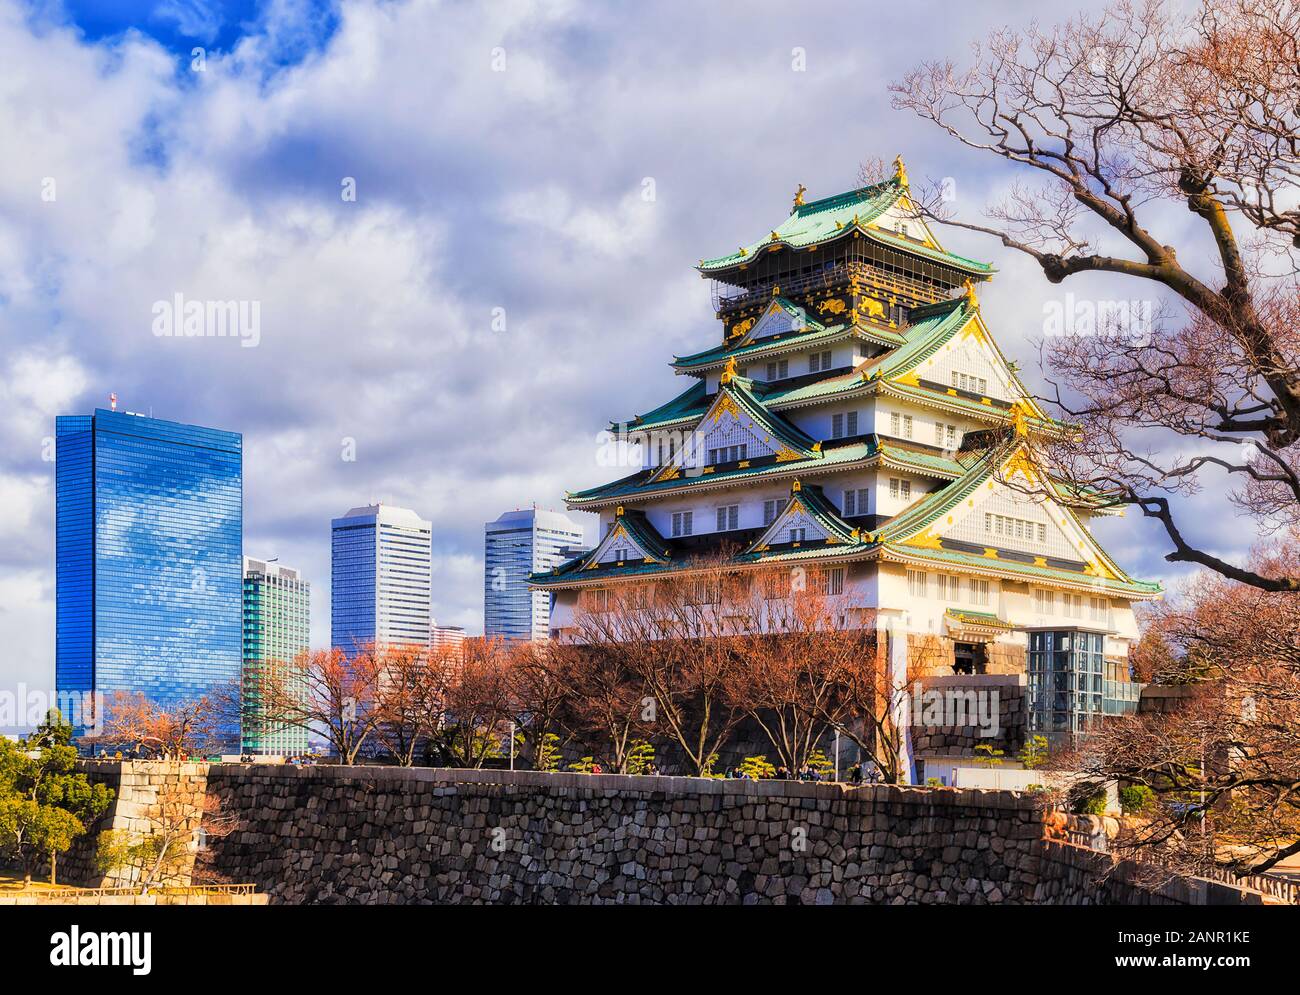 La tour principale de garder du château d'Osaka dans la ville jardin sur murs en pierre à côté de CBD urbain moderne des gratte-ciel. Banque D'Images